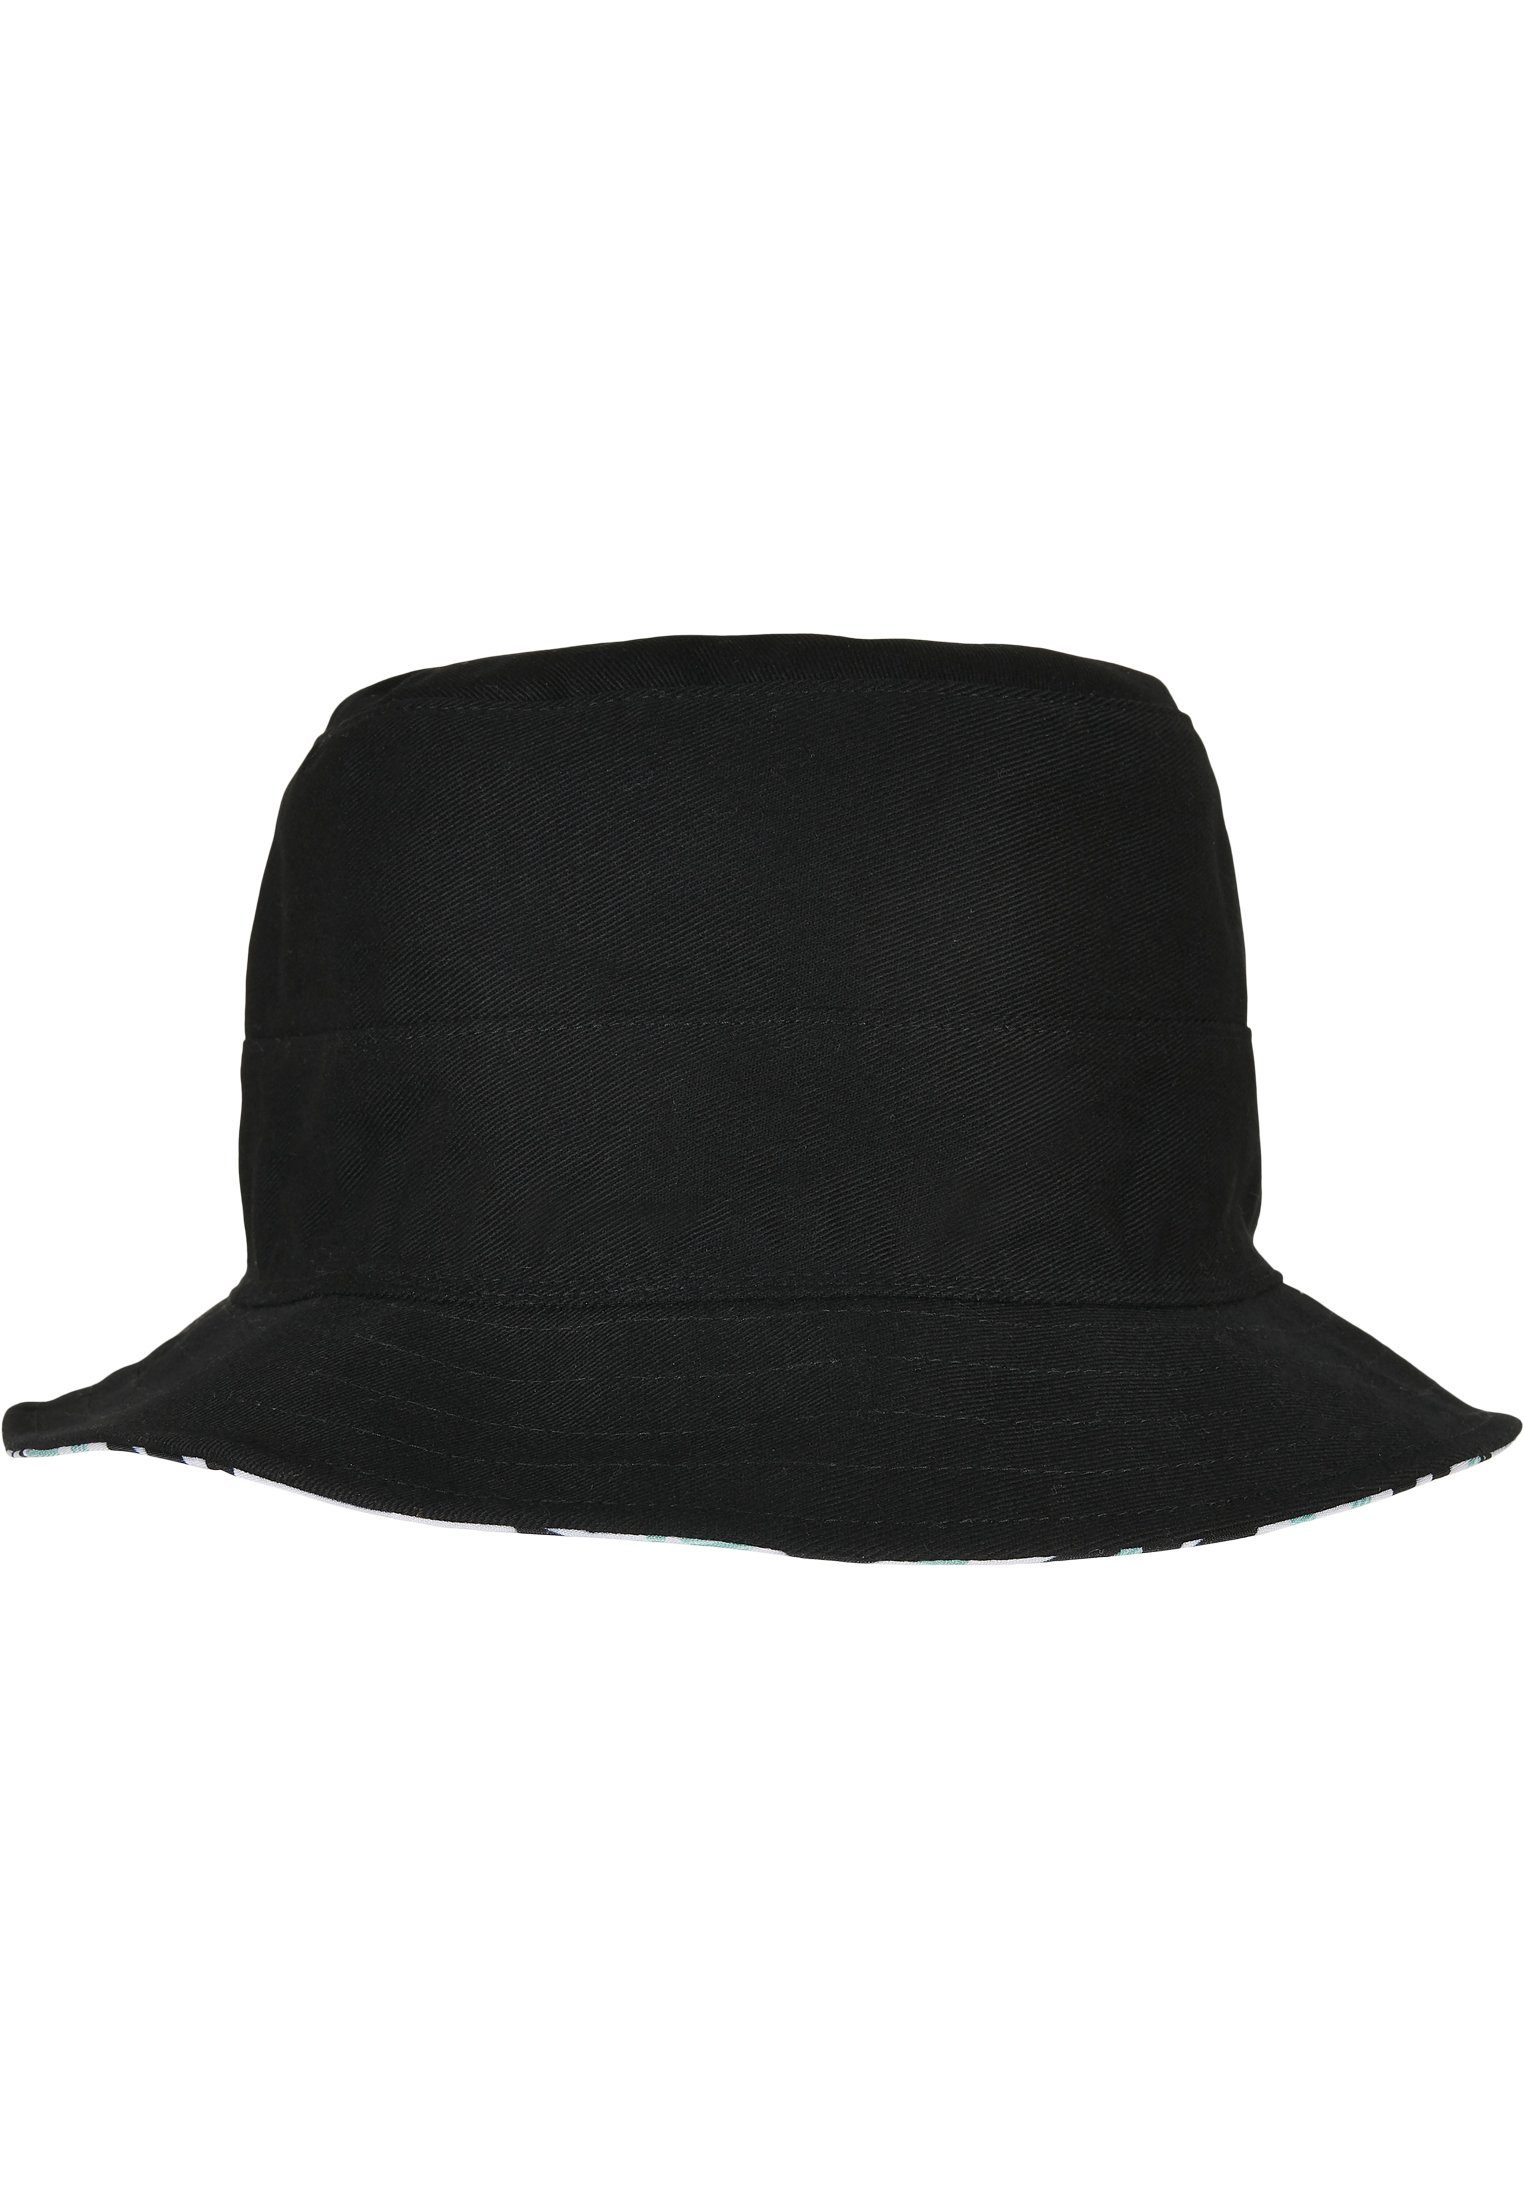 CAYLER C&S Summer Hat SONS Cap WL Bucket Reversible & Aztec Flex